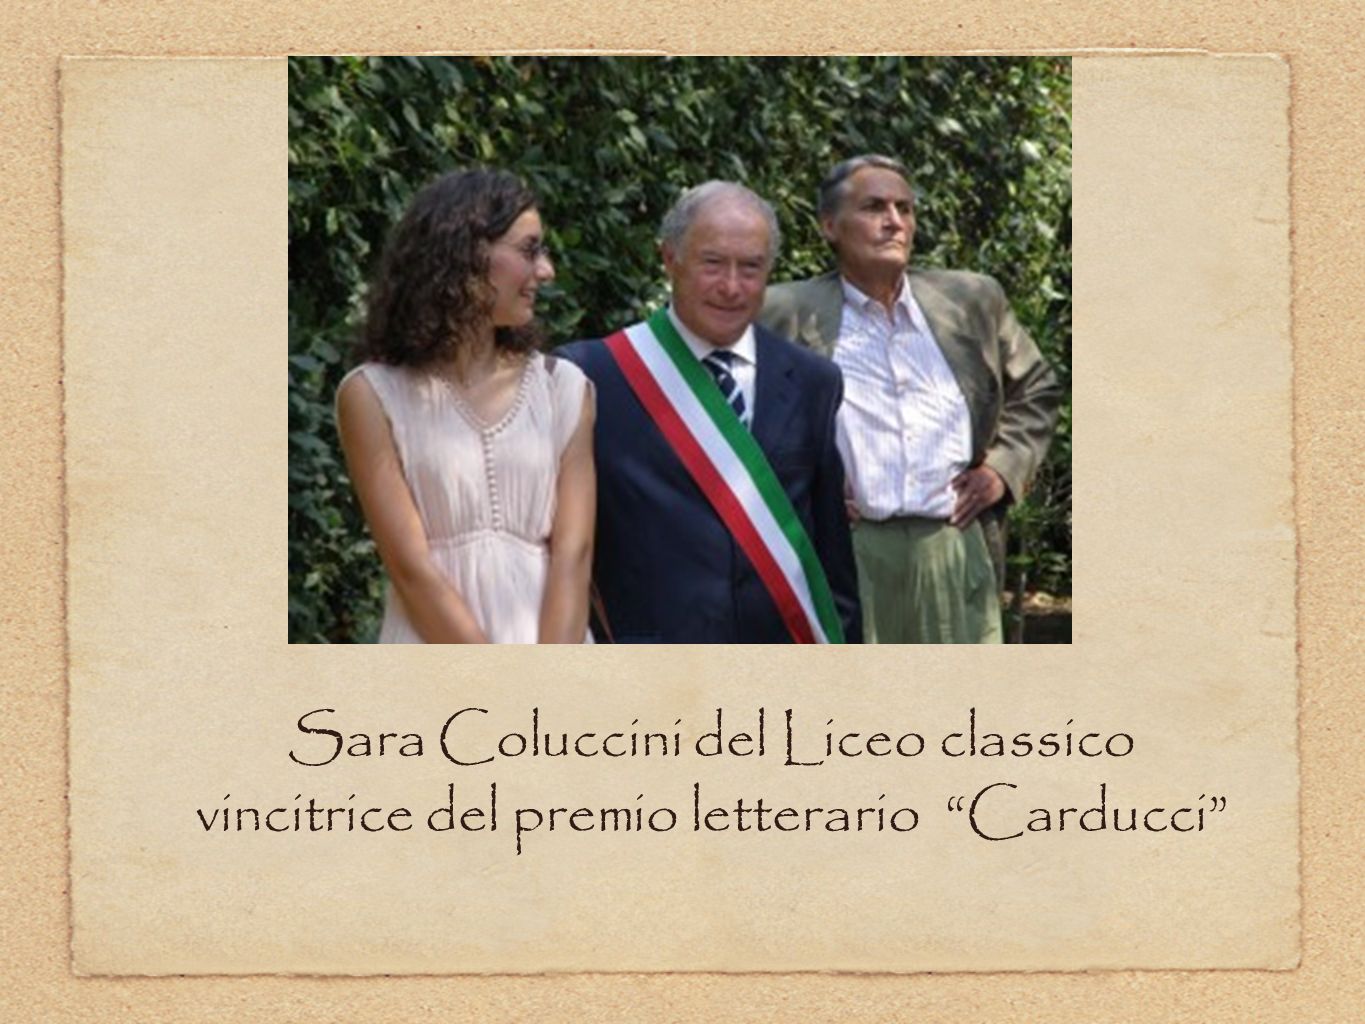 Sara Coluccini del Liceo classico vincitrice del premio letterario Carducci